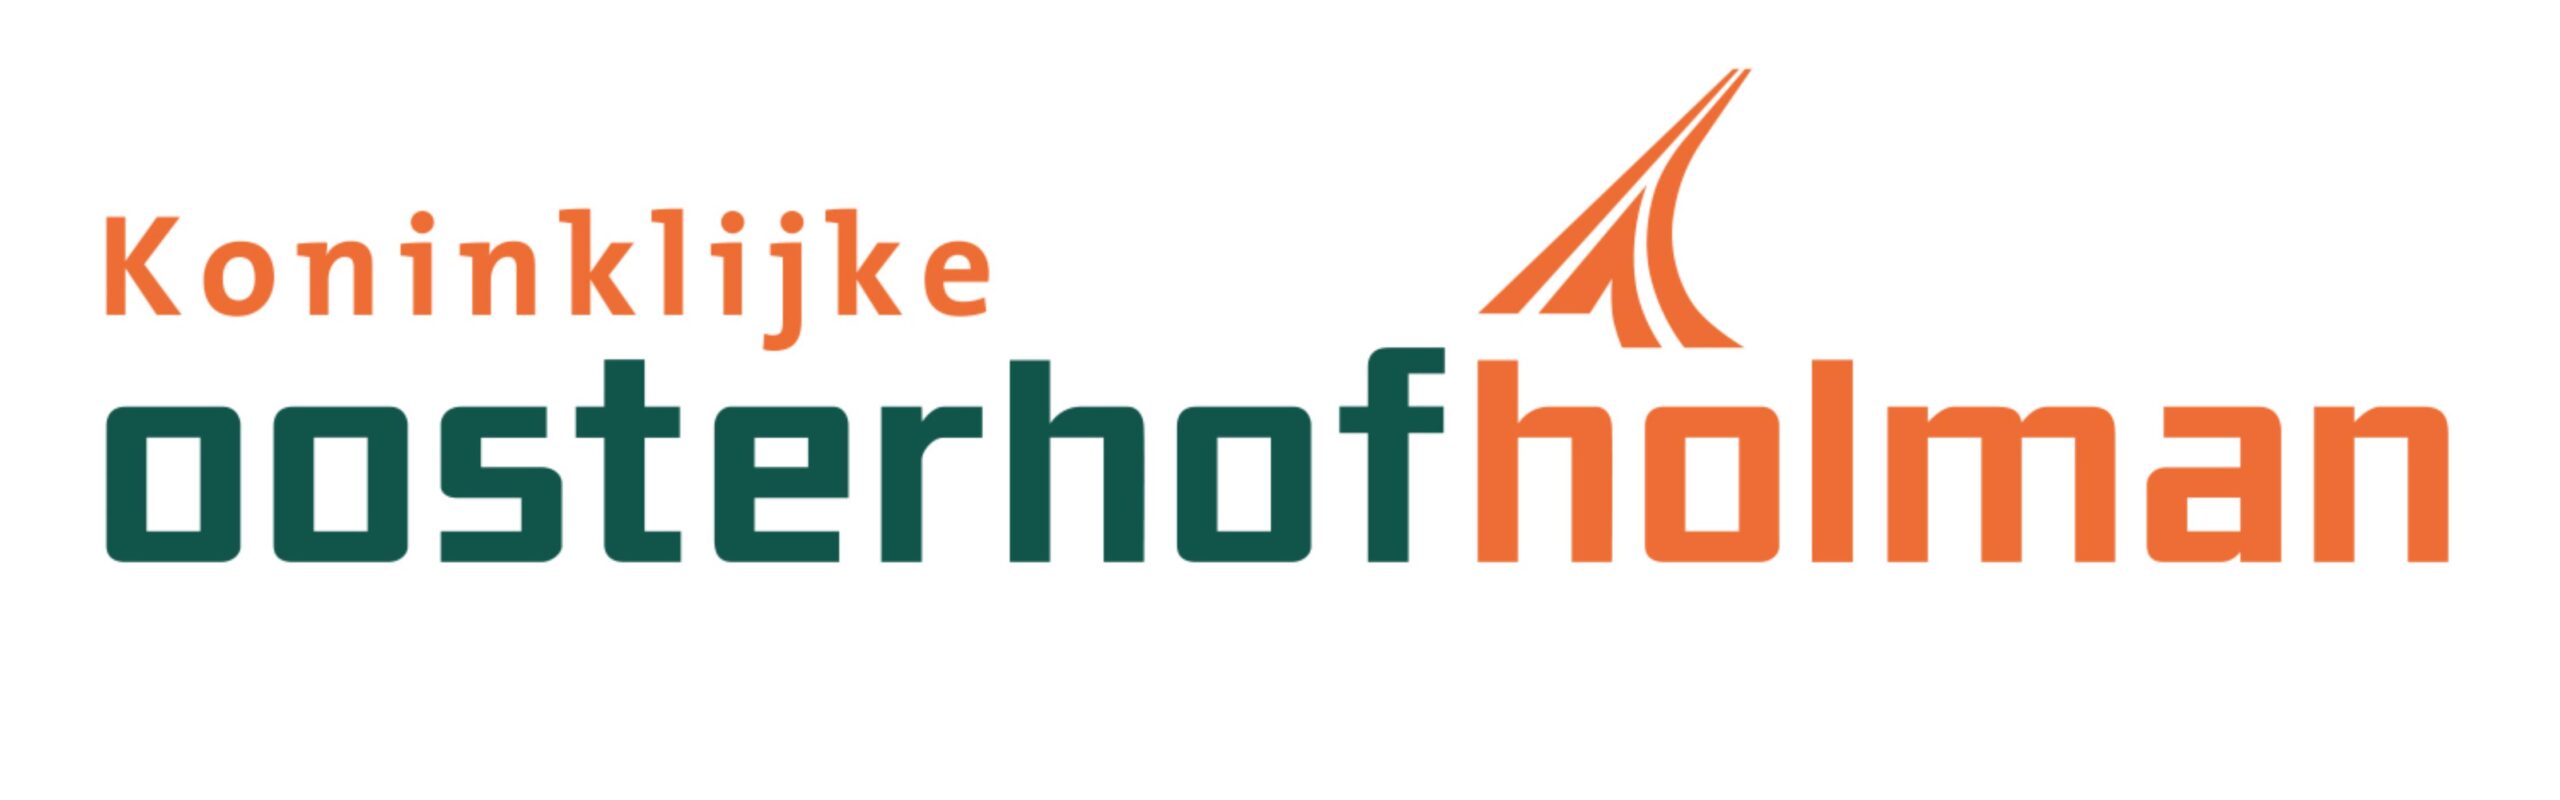 Koninklijke Oosterhof Holman_logo_2022_groenoranje